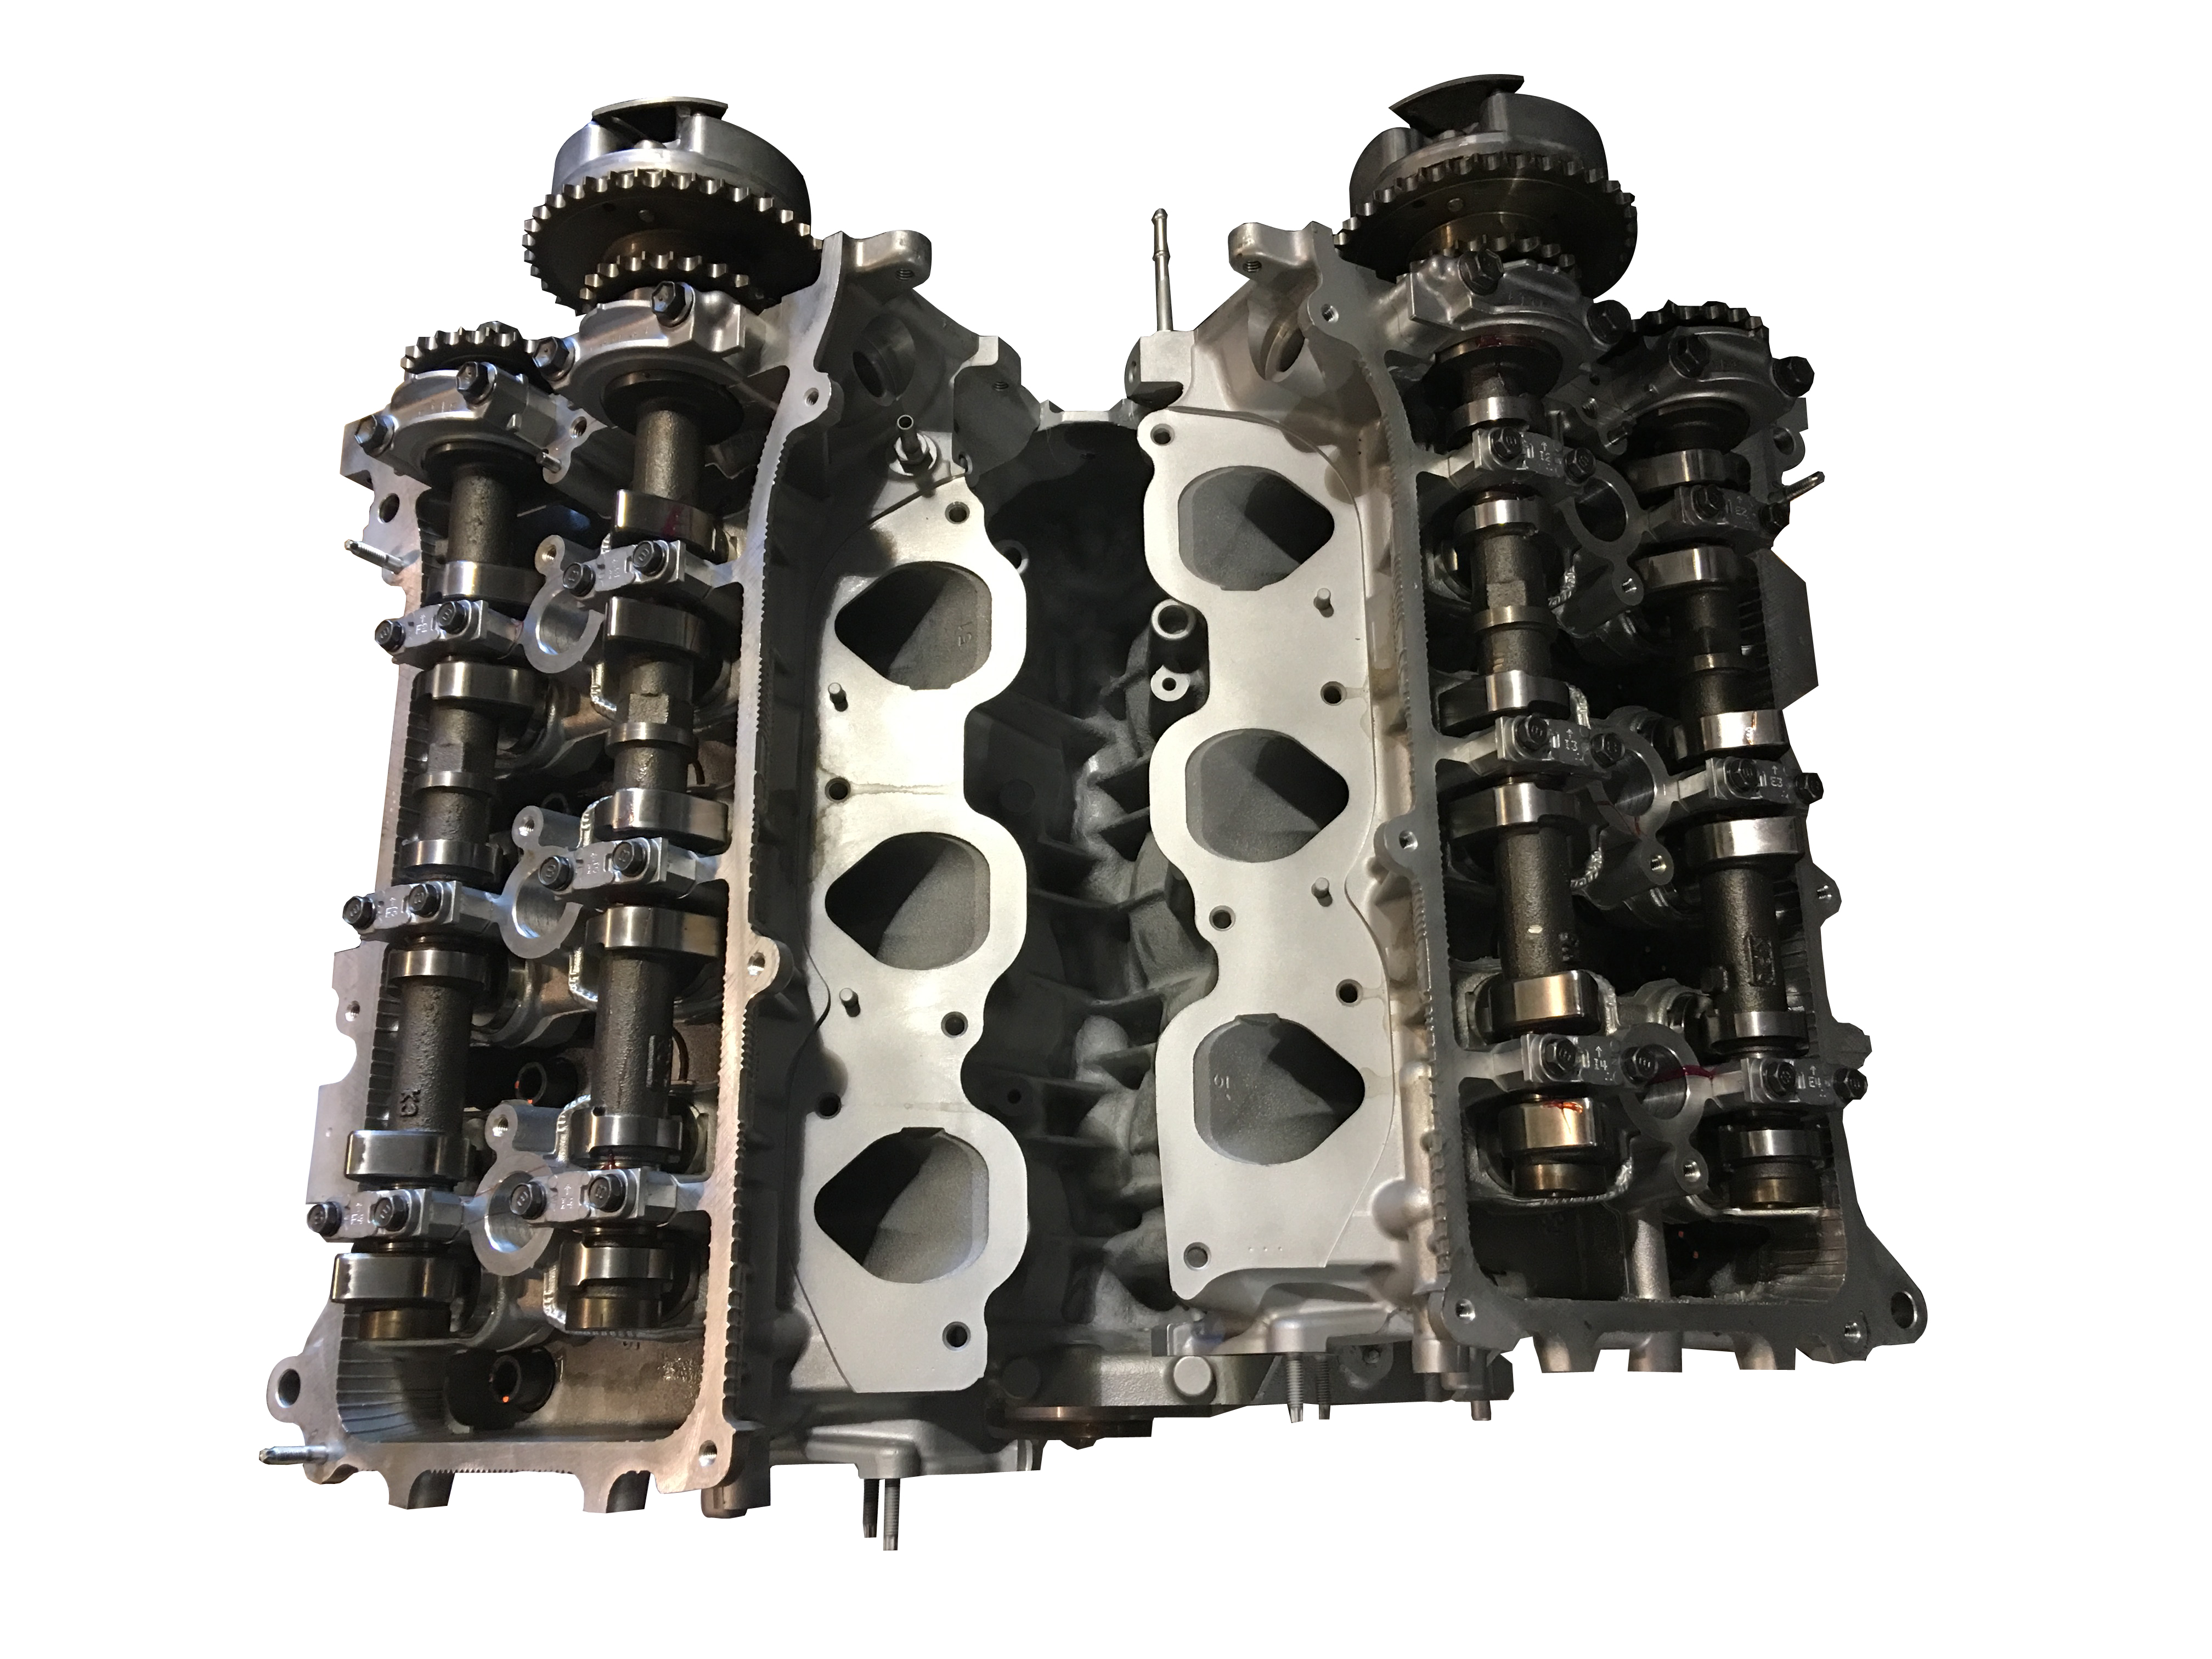 Toyota 1GR rebuilt engine for